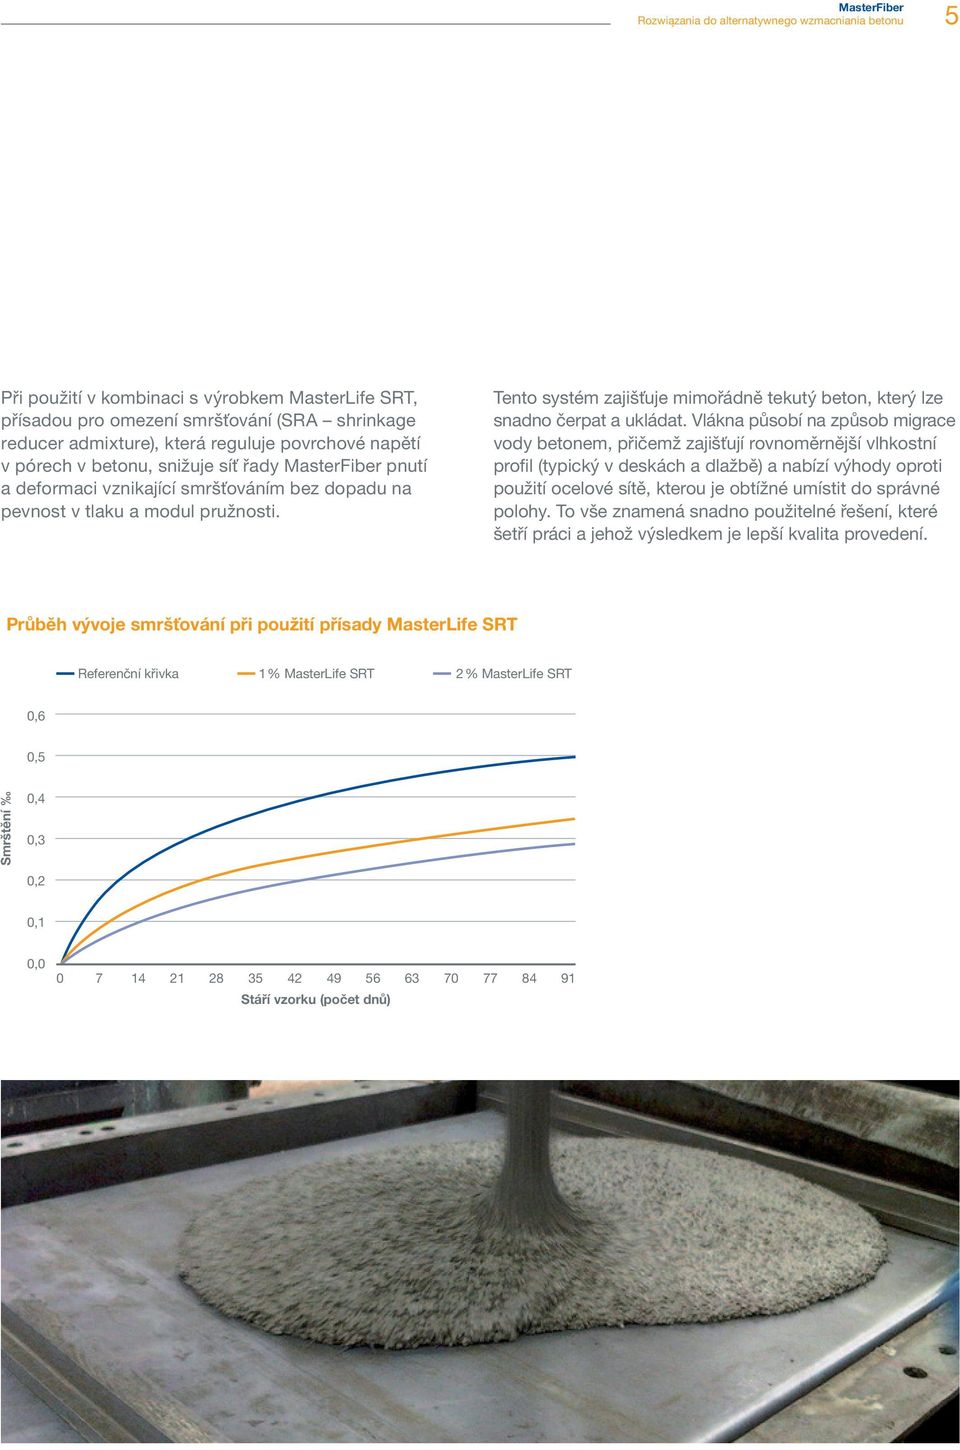 Vlákna působí na způsob migrace vody betonem, přičemž zajišťují rovnoměrnější vlhkostní profil (typický v deskách a dlažbě) a nabízí výhody oproti použití ocelové sítě, kterou je obtížné umístit do